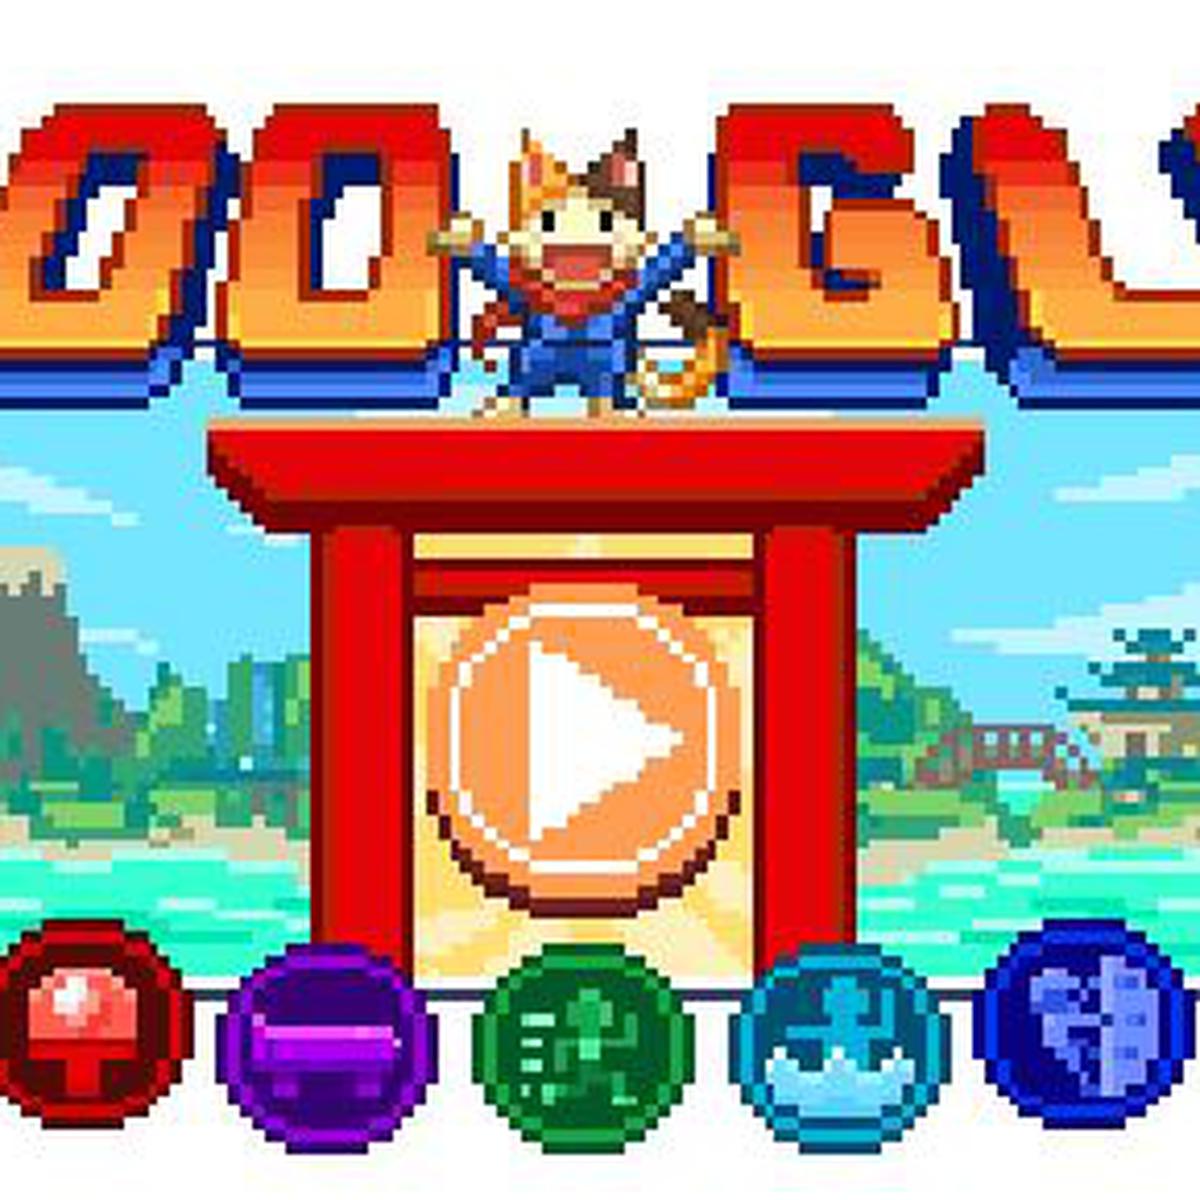 Los Juegos Olímpicos de Tokio 2020, en el doodle de Google - Información